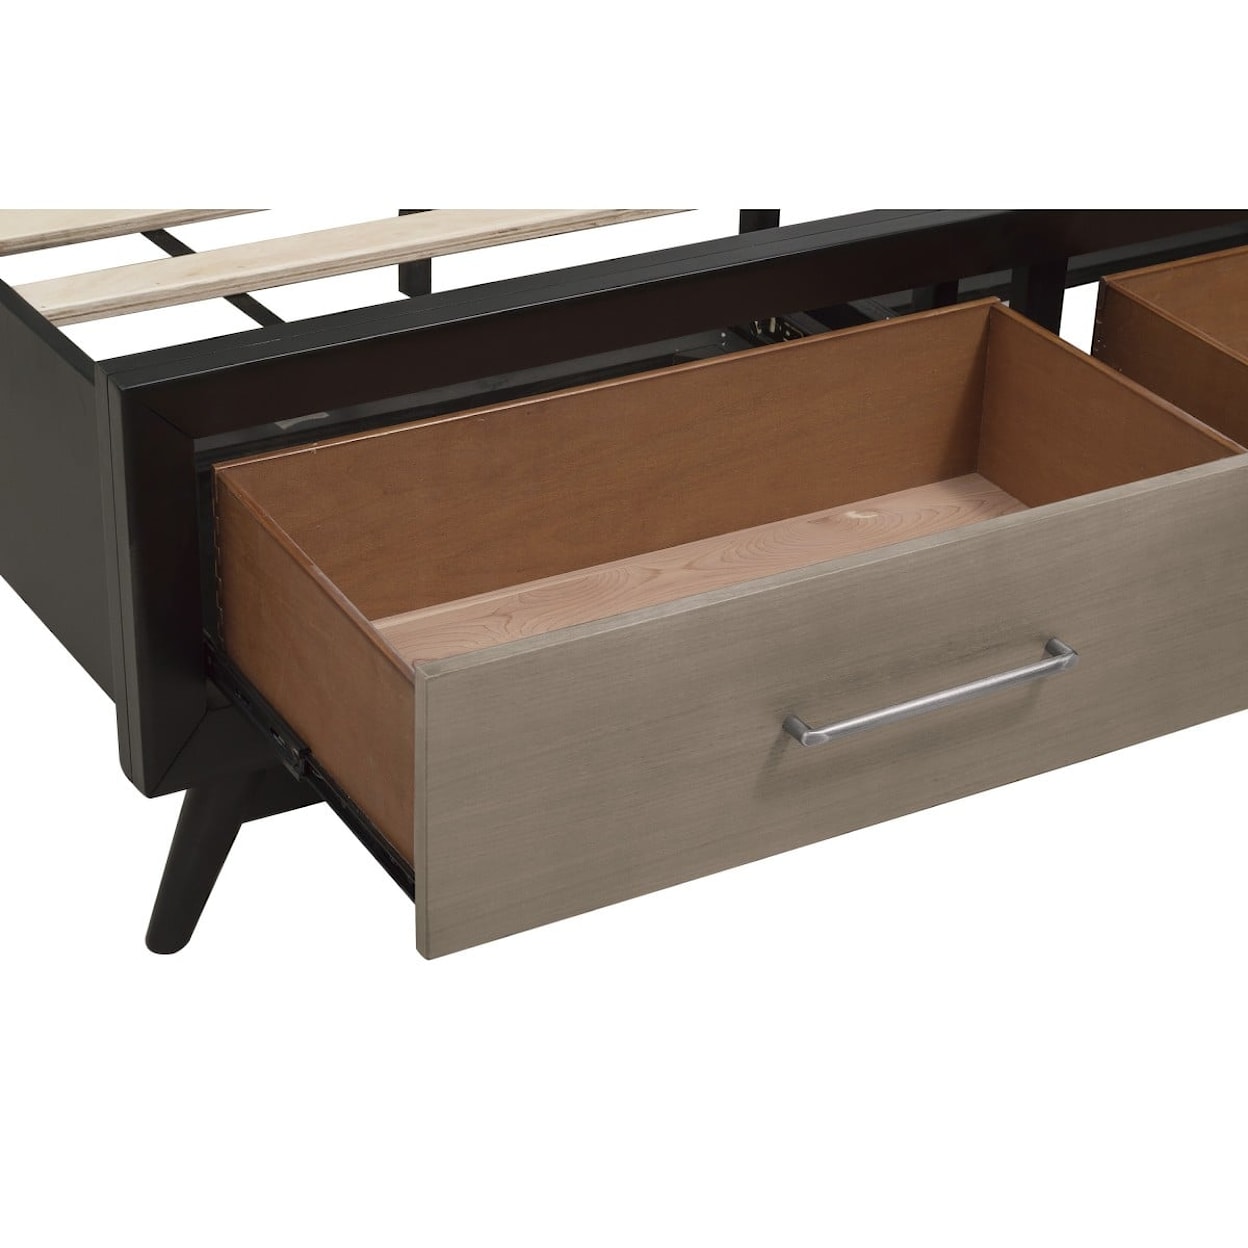 Homelegance Furniture Raku King  Bed with FB Storage